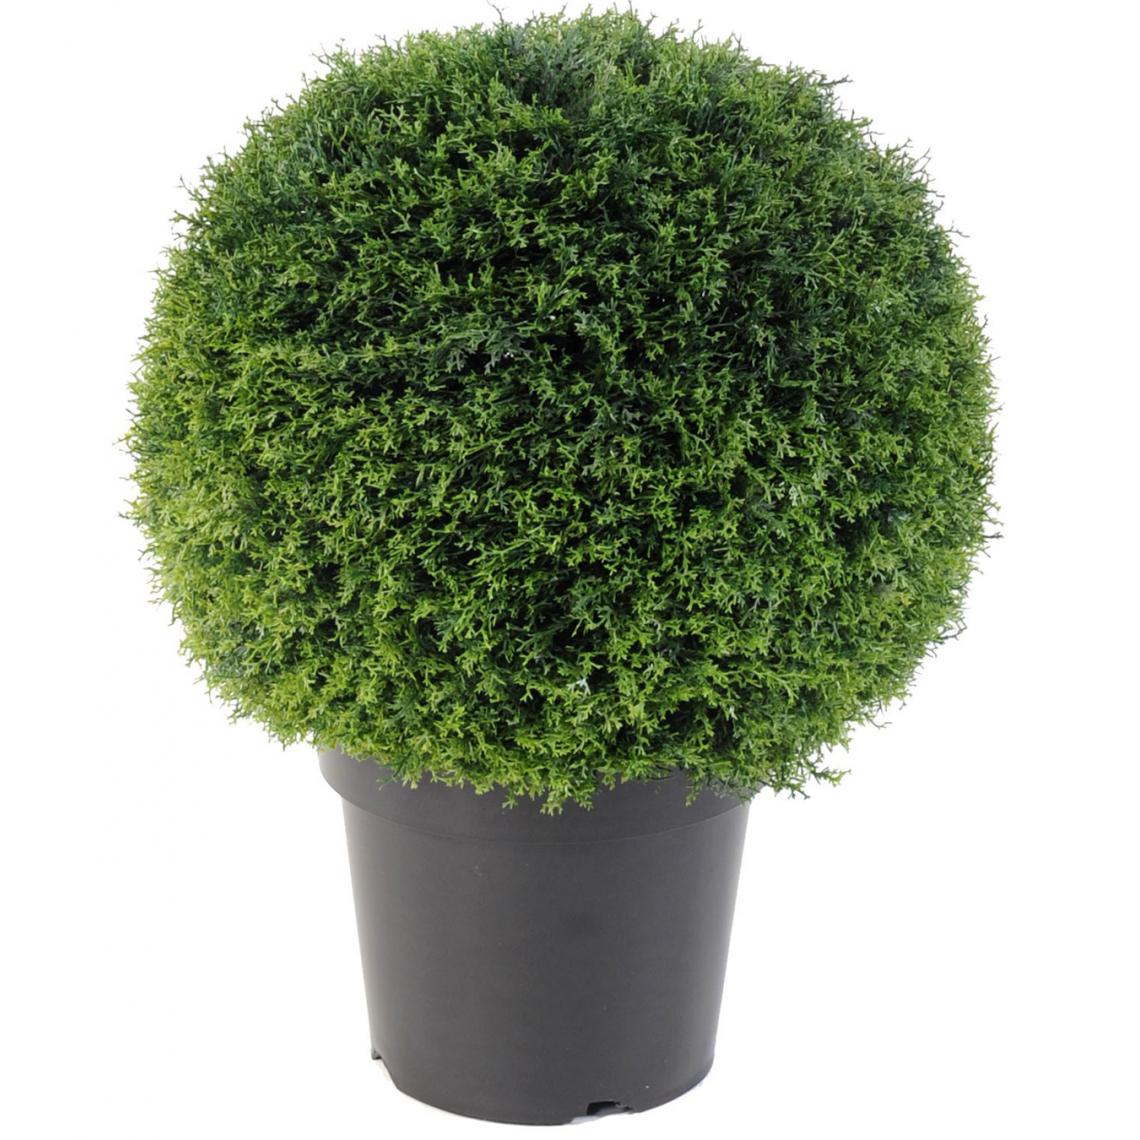 Pegane - Plante artificielle haute gamme Spécial extérieur / Cyprès artificiel vert - Dim : H.55 x D.45 cm - Plantes et fleurs artificielles